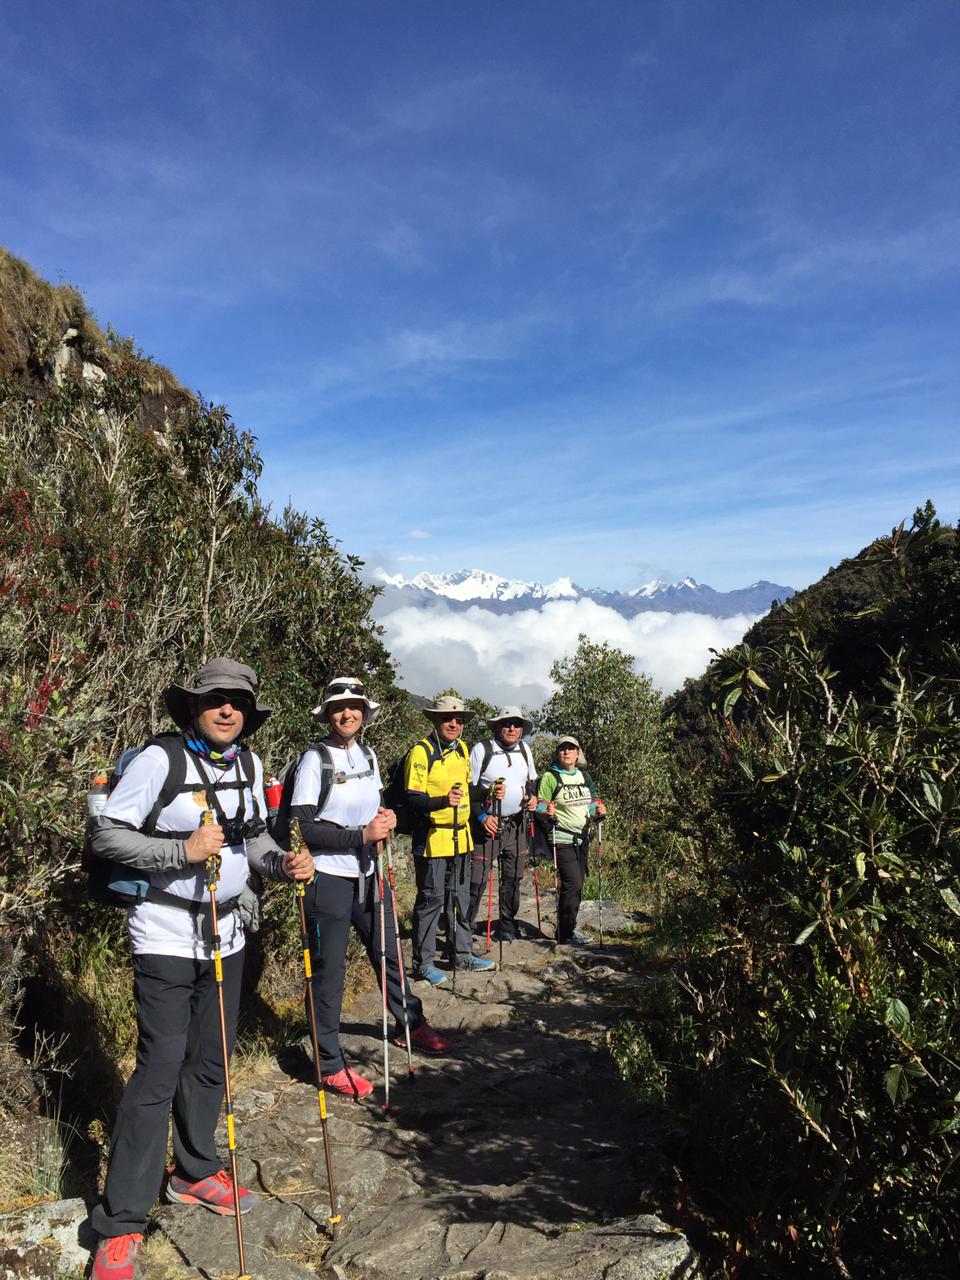 The 4-day Inca Jungle Trail to Machu Picchu